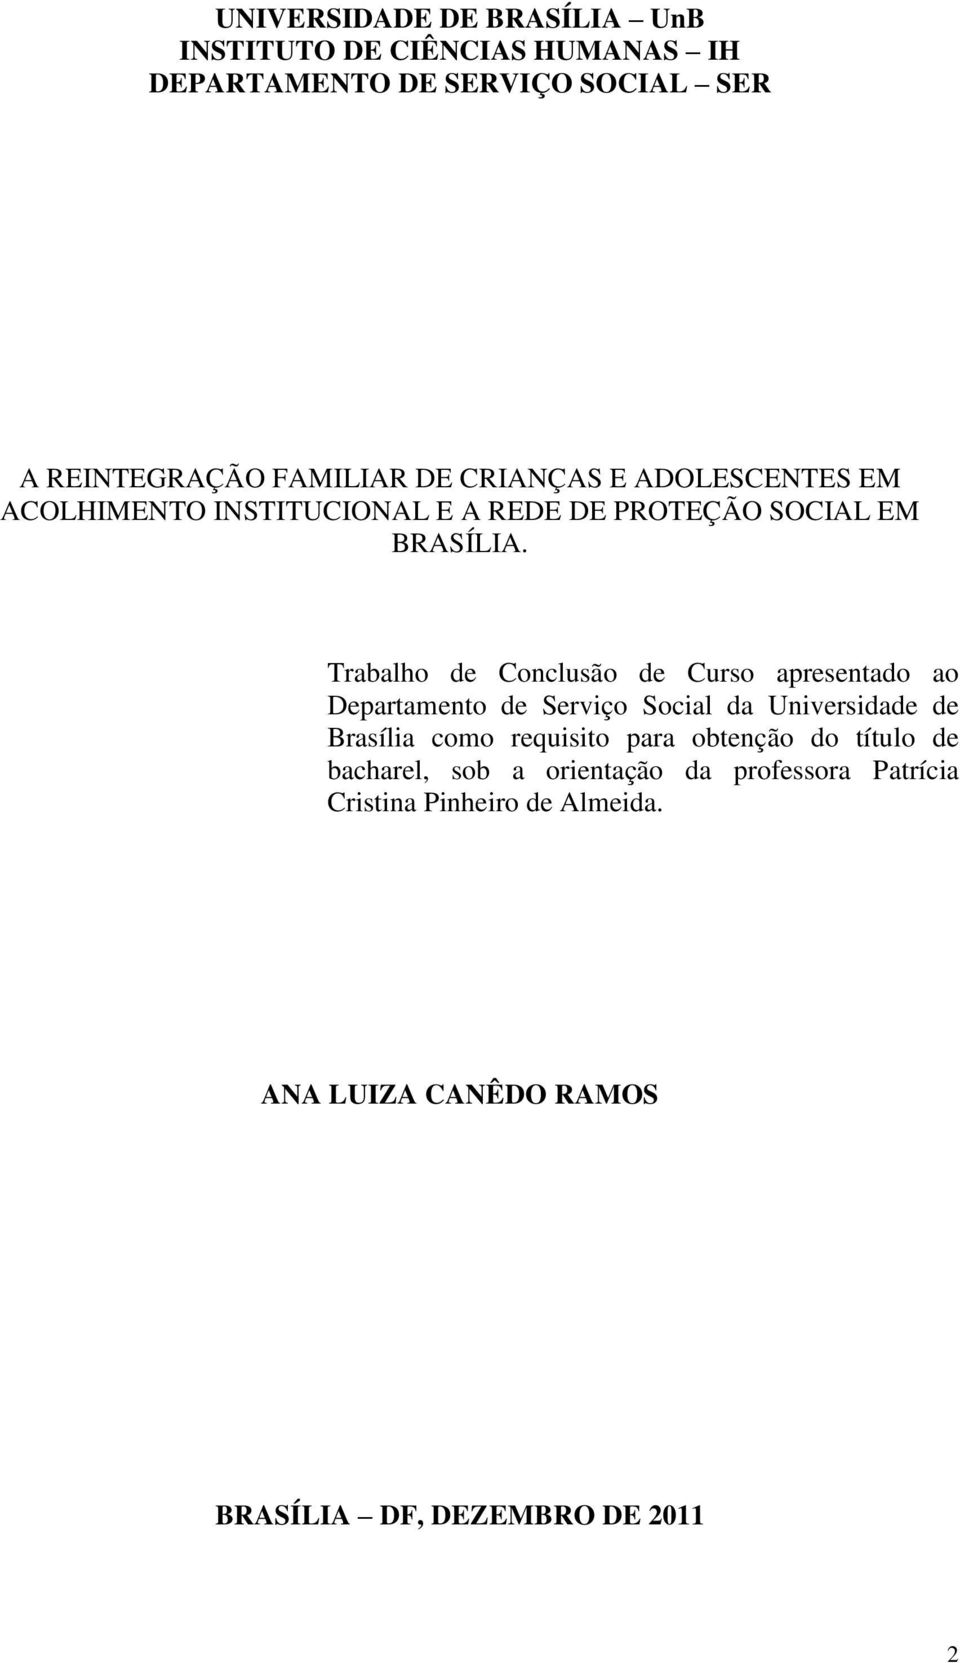 Trabalho de Conclusão de Curso apresentado ao Departamento de Serviço Social da Universidade de Brasília como requisito para